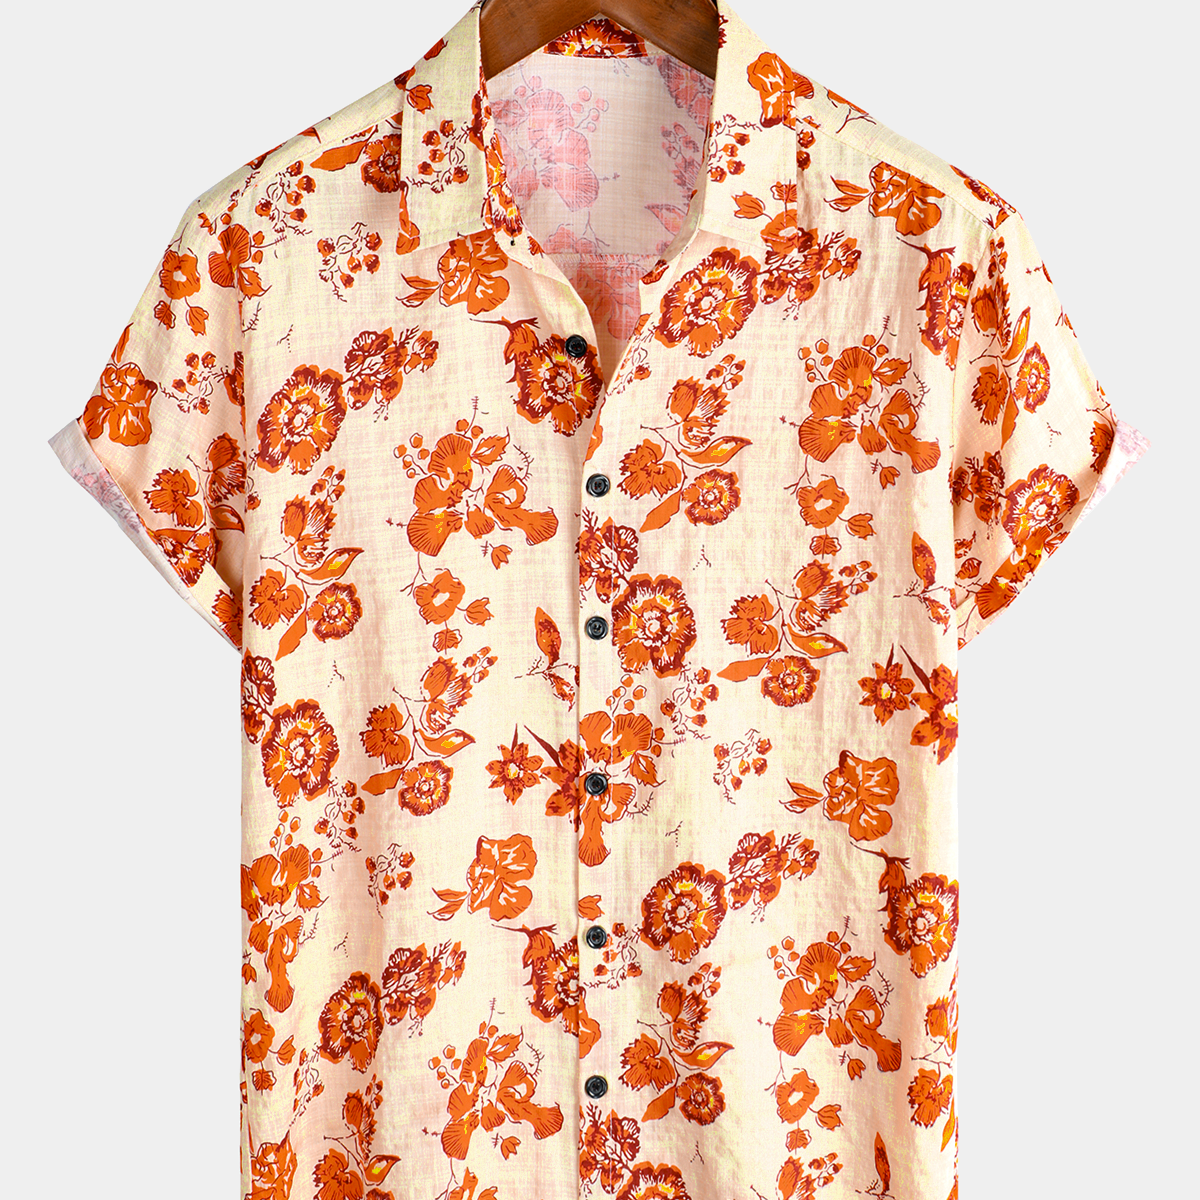 Men's Cotton Floral Hawaiian Short Sleeve Button Up Summer Shirt